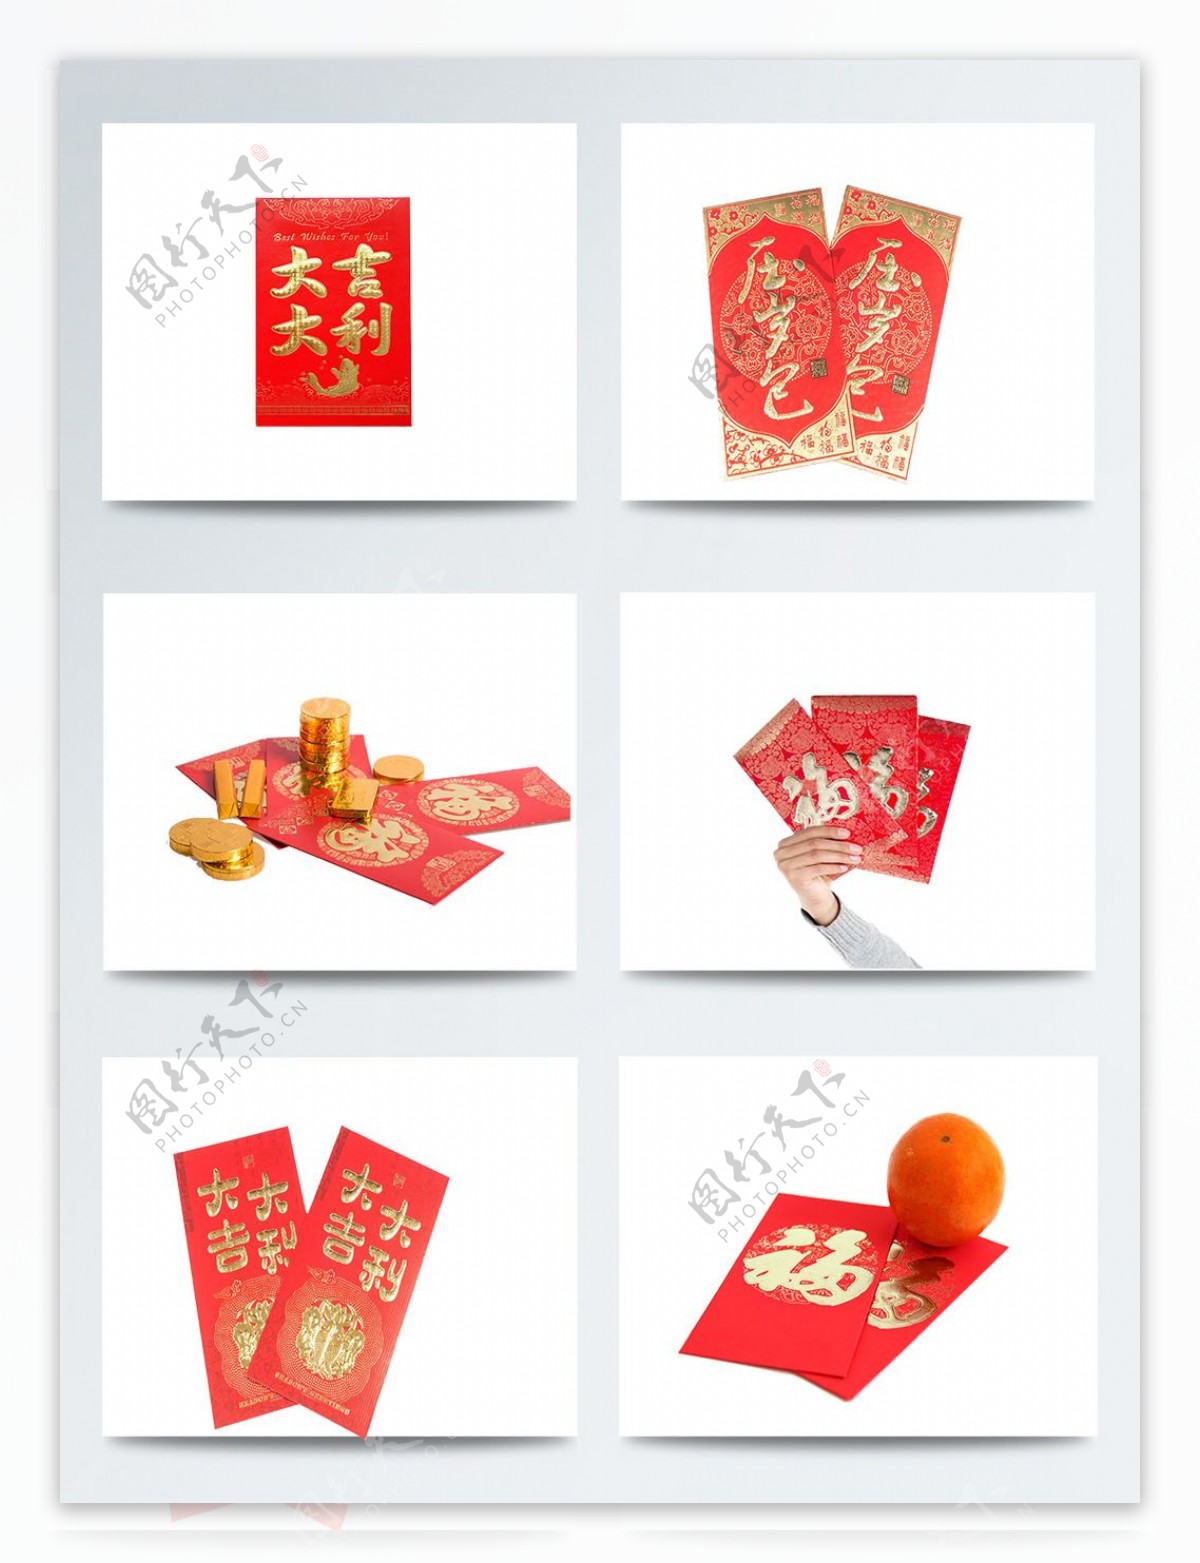 中国传统红包图片素材